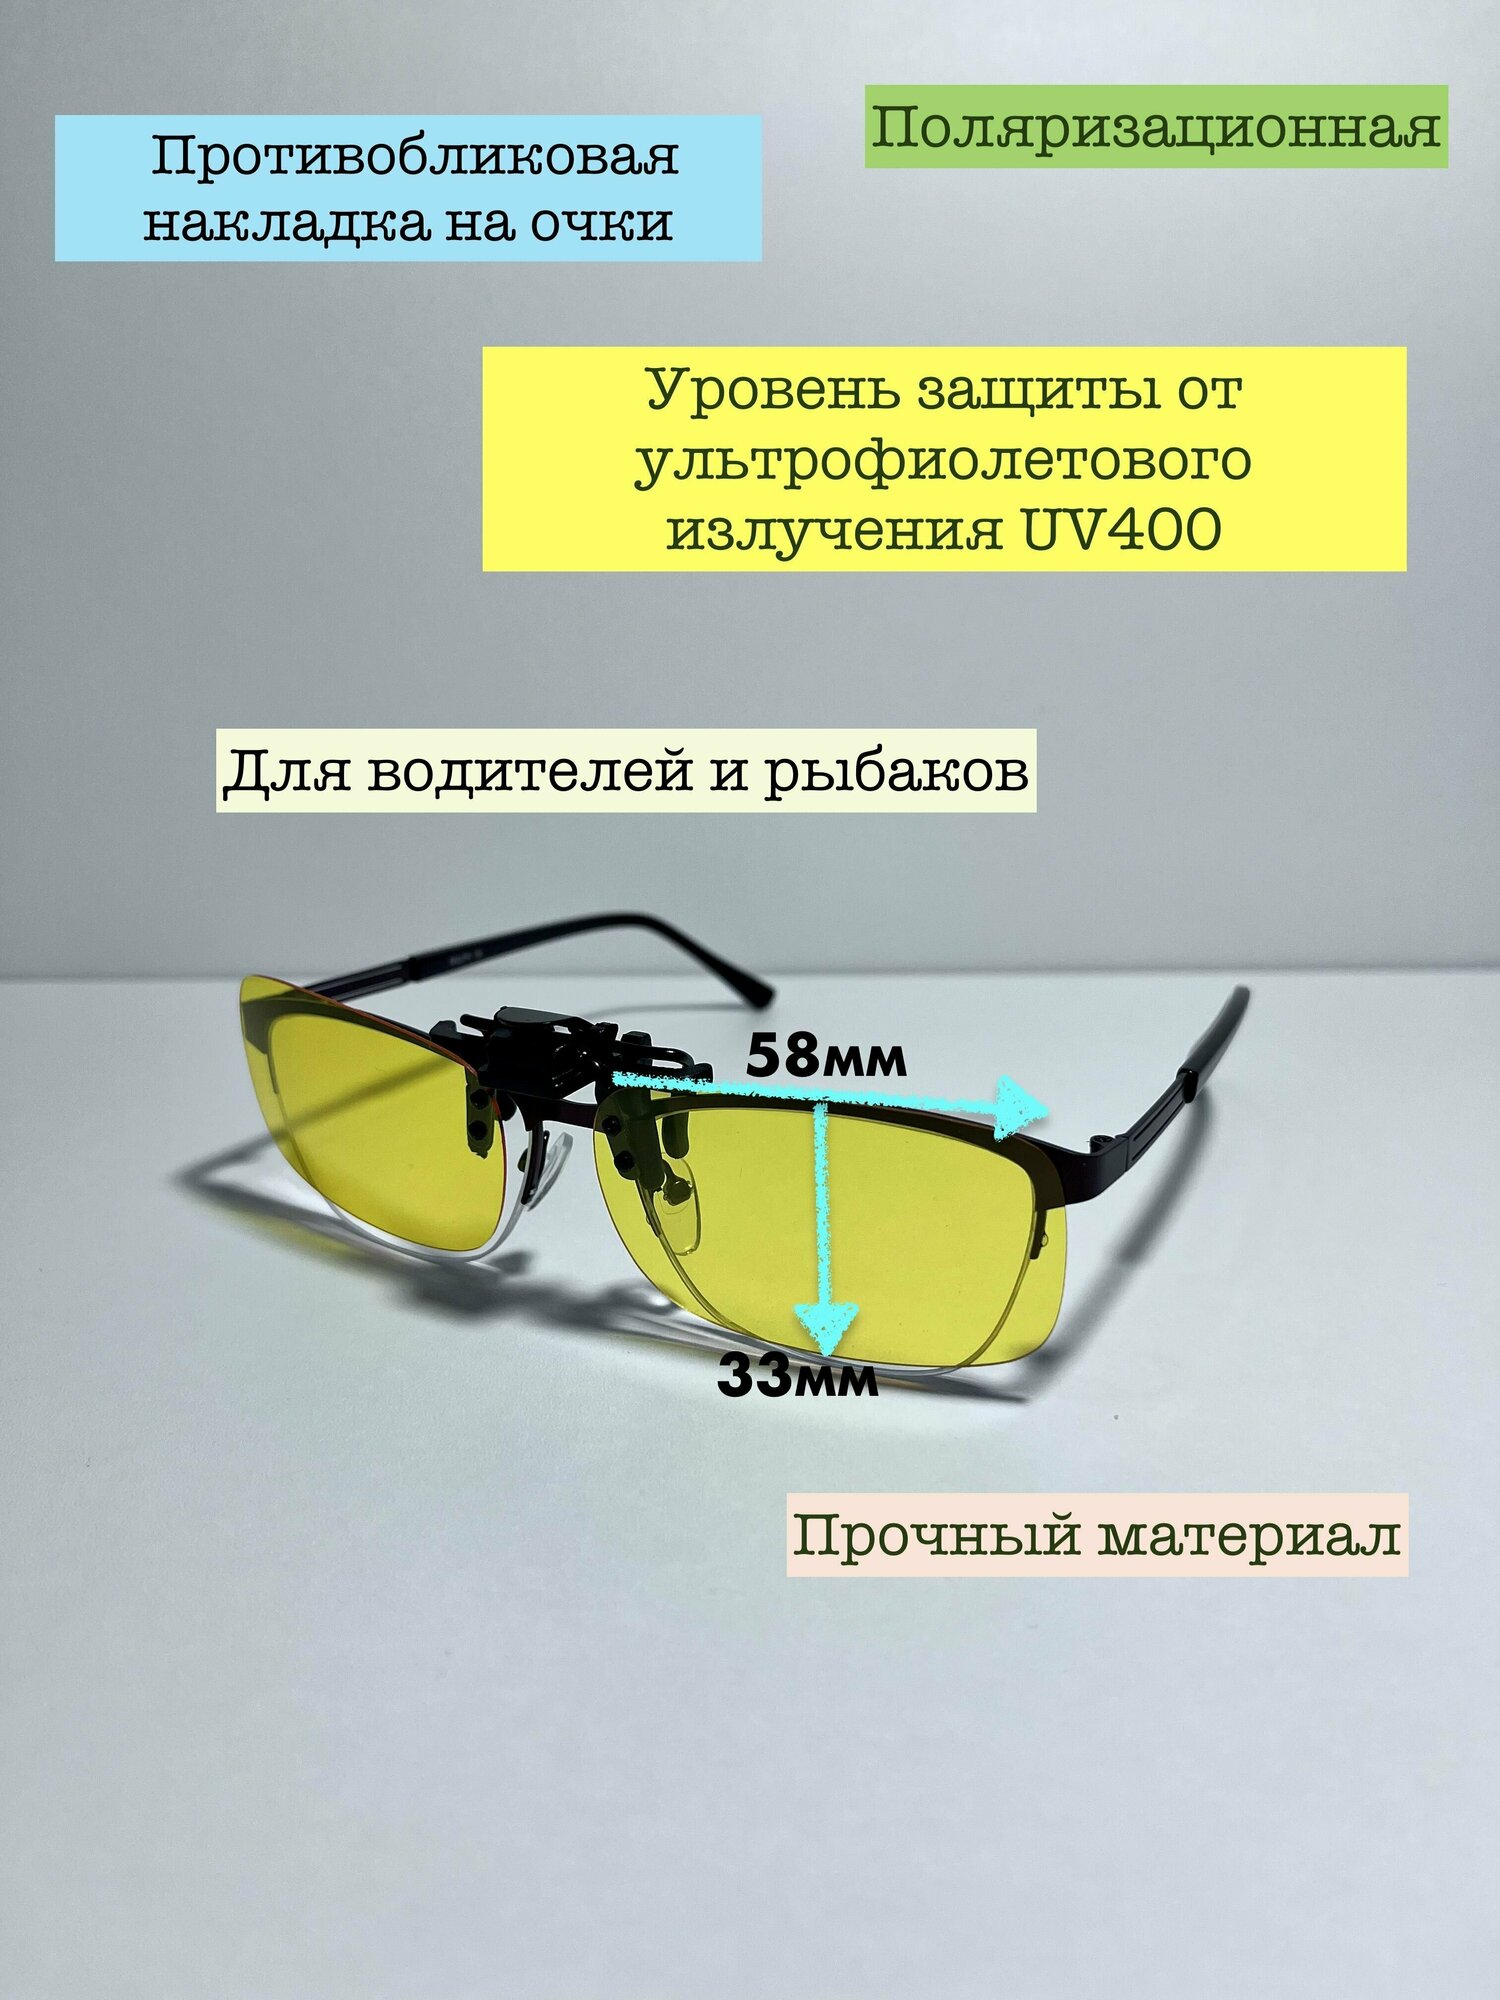 Накладка на очки (откидная) солнцезащитная поляризационная, антибликовая, желтая